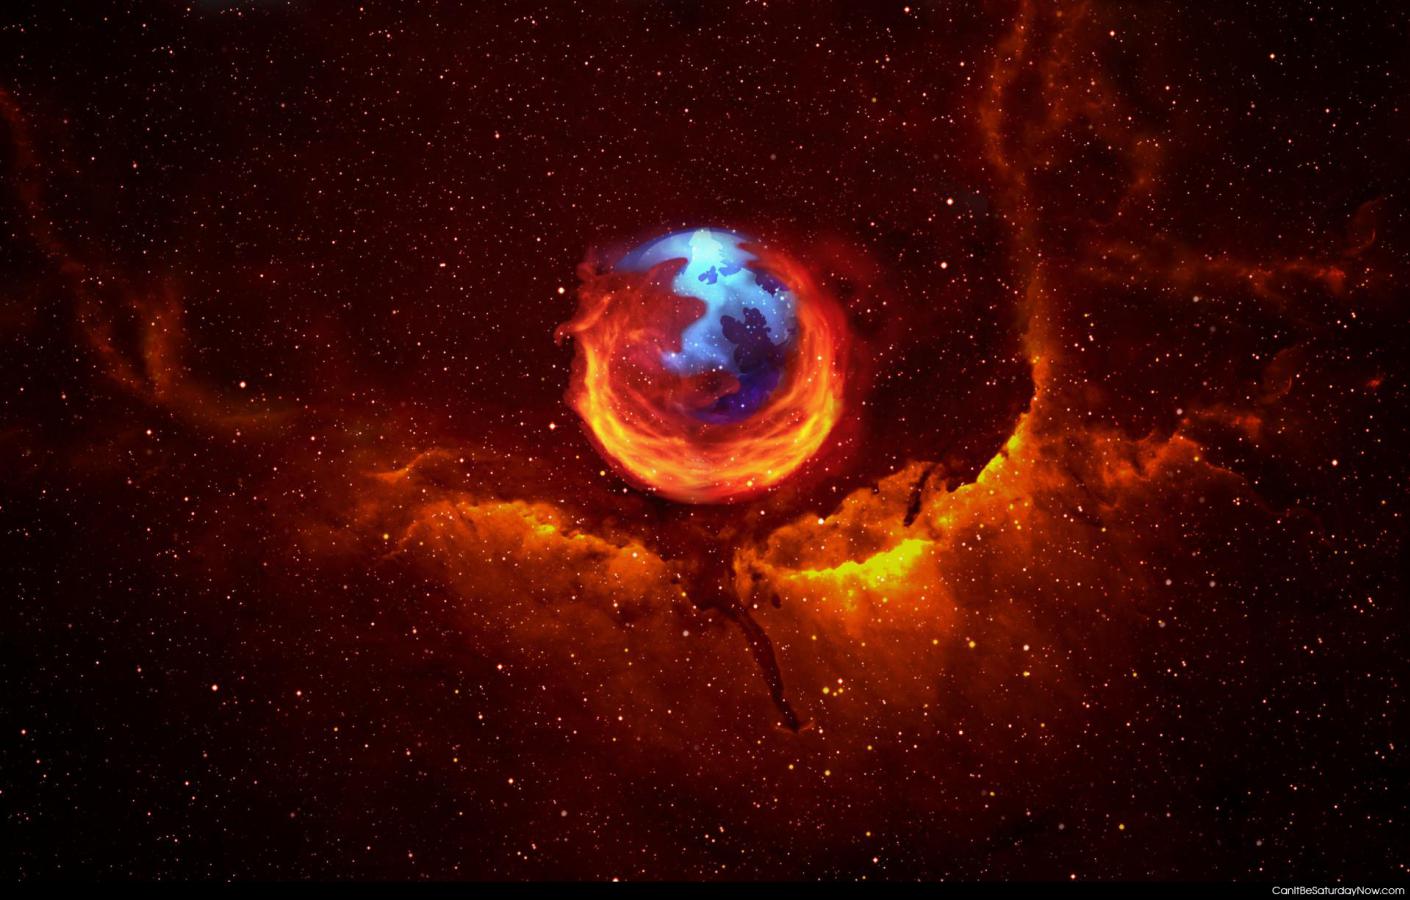 Firefox nebula - this is the Firefox nebula